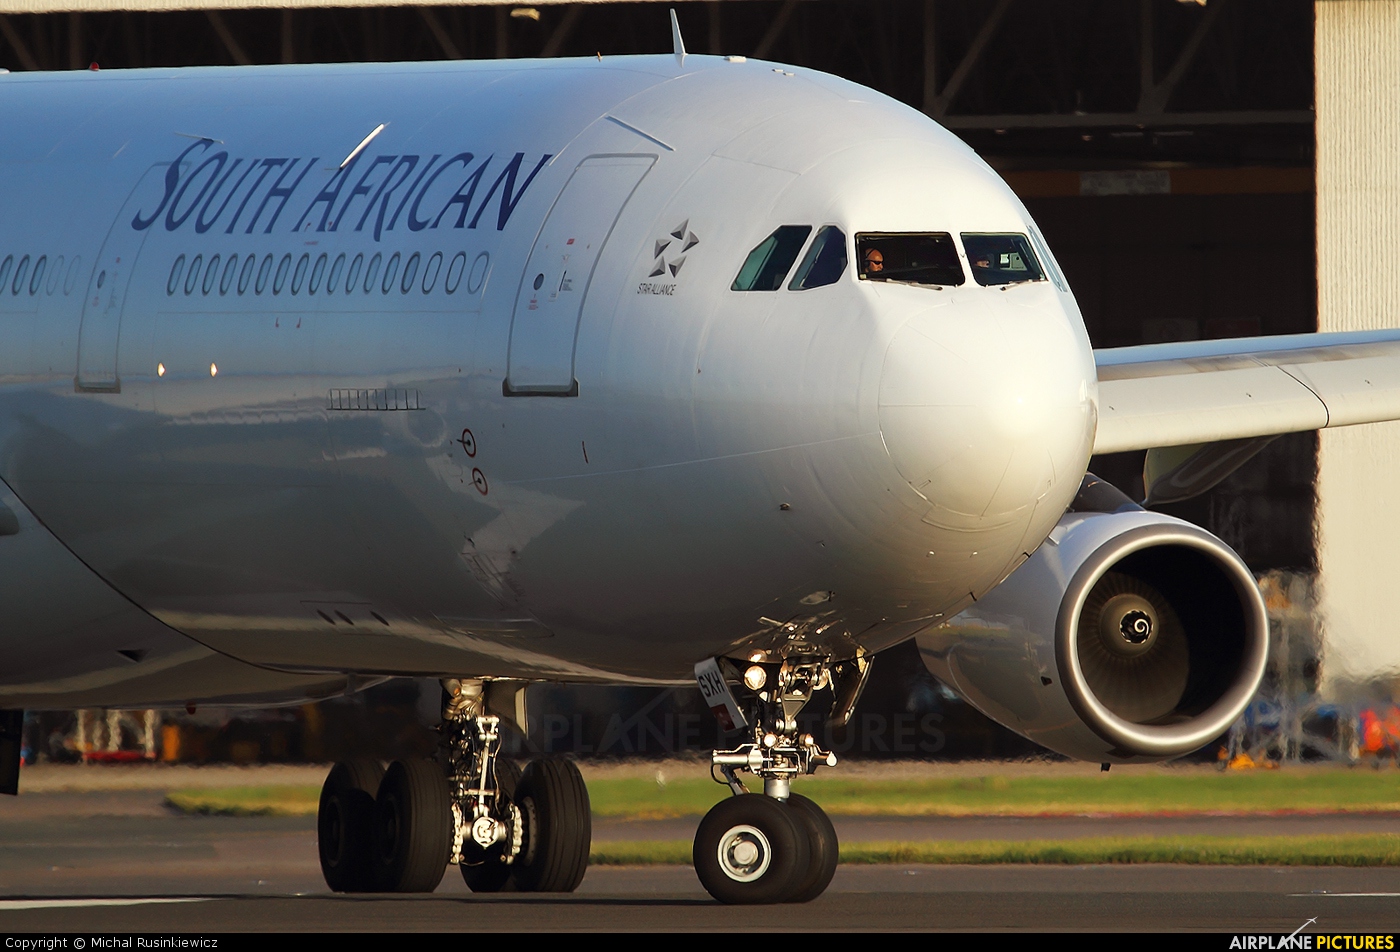 Αποτέλεσμα εικόνας για south african airways A333